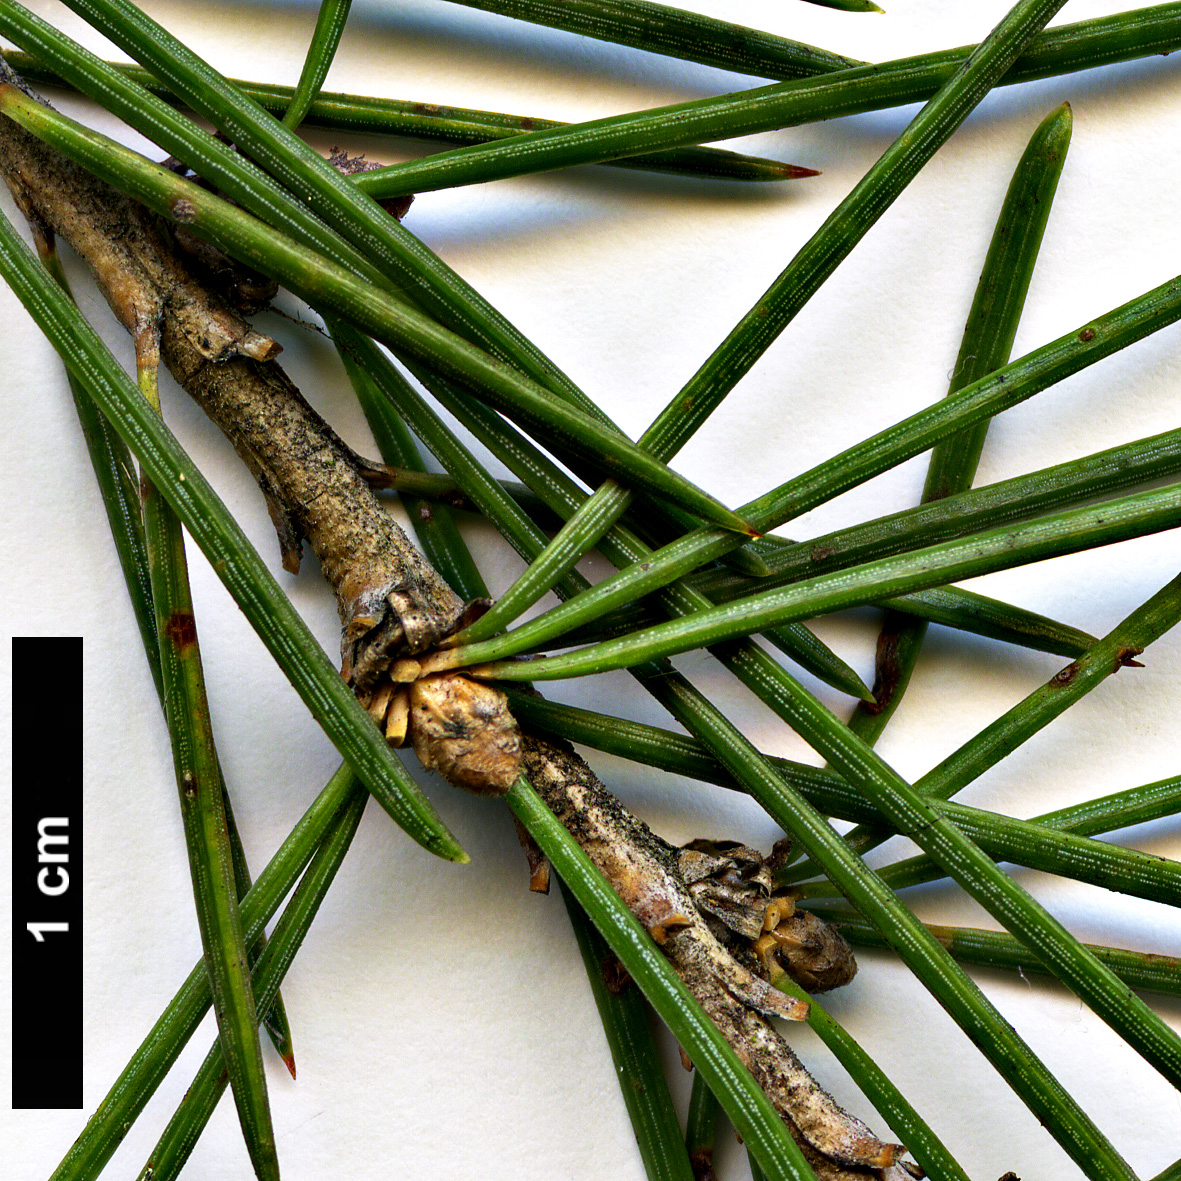 High resolution image: Family: Pinaceae - Genus: Cedrus - Taxon: deodara